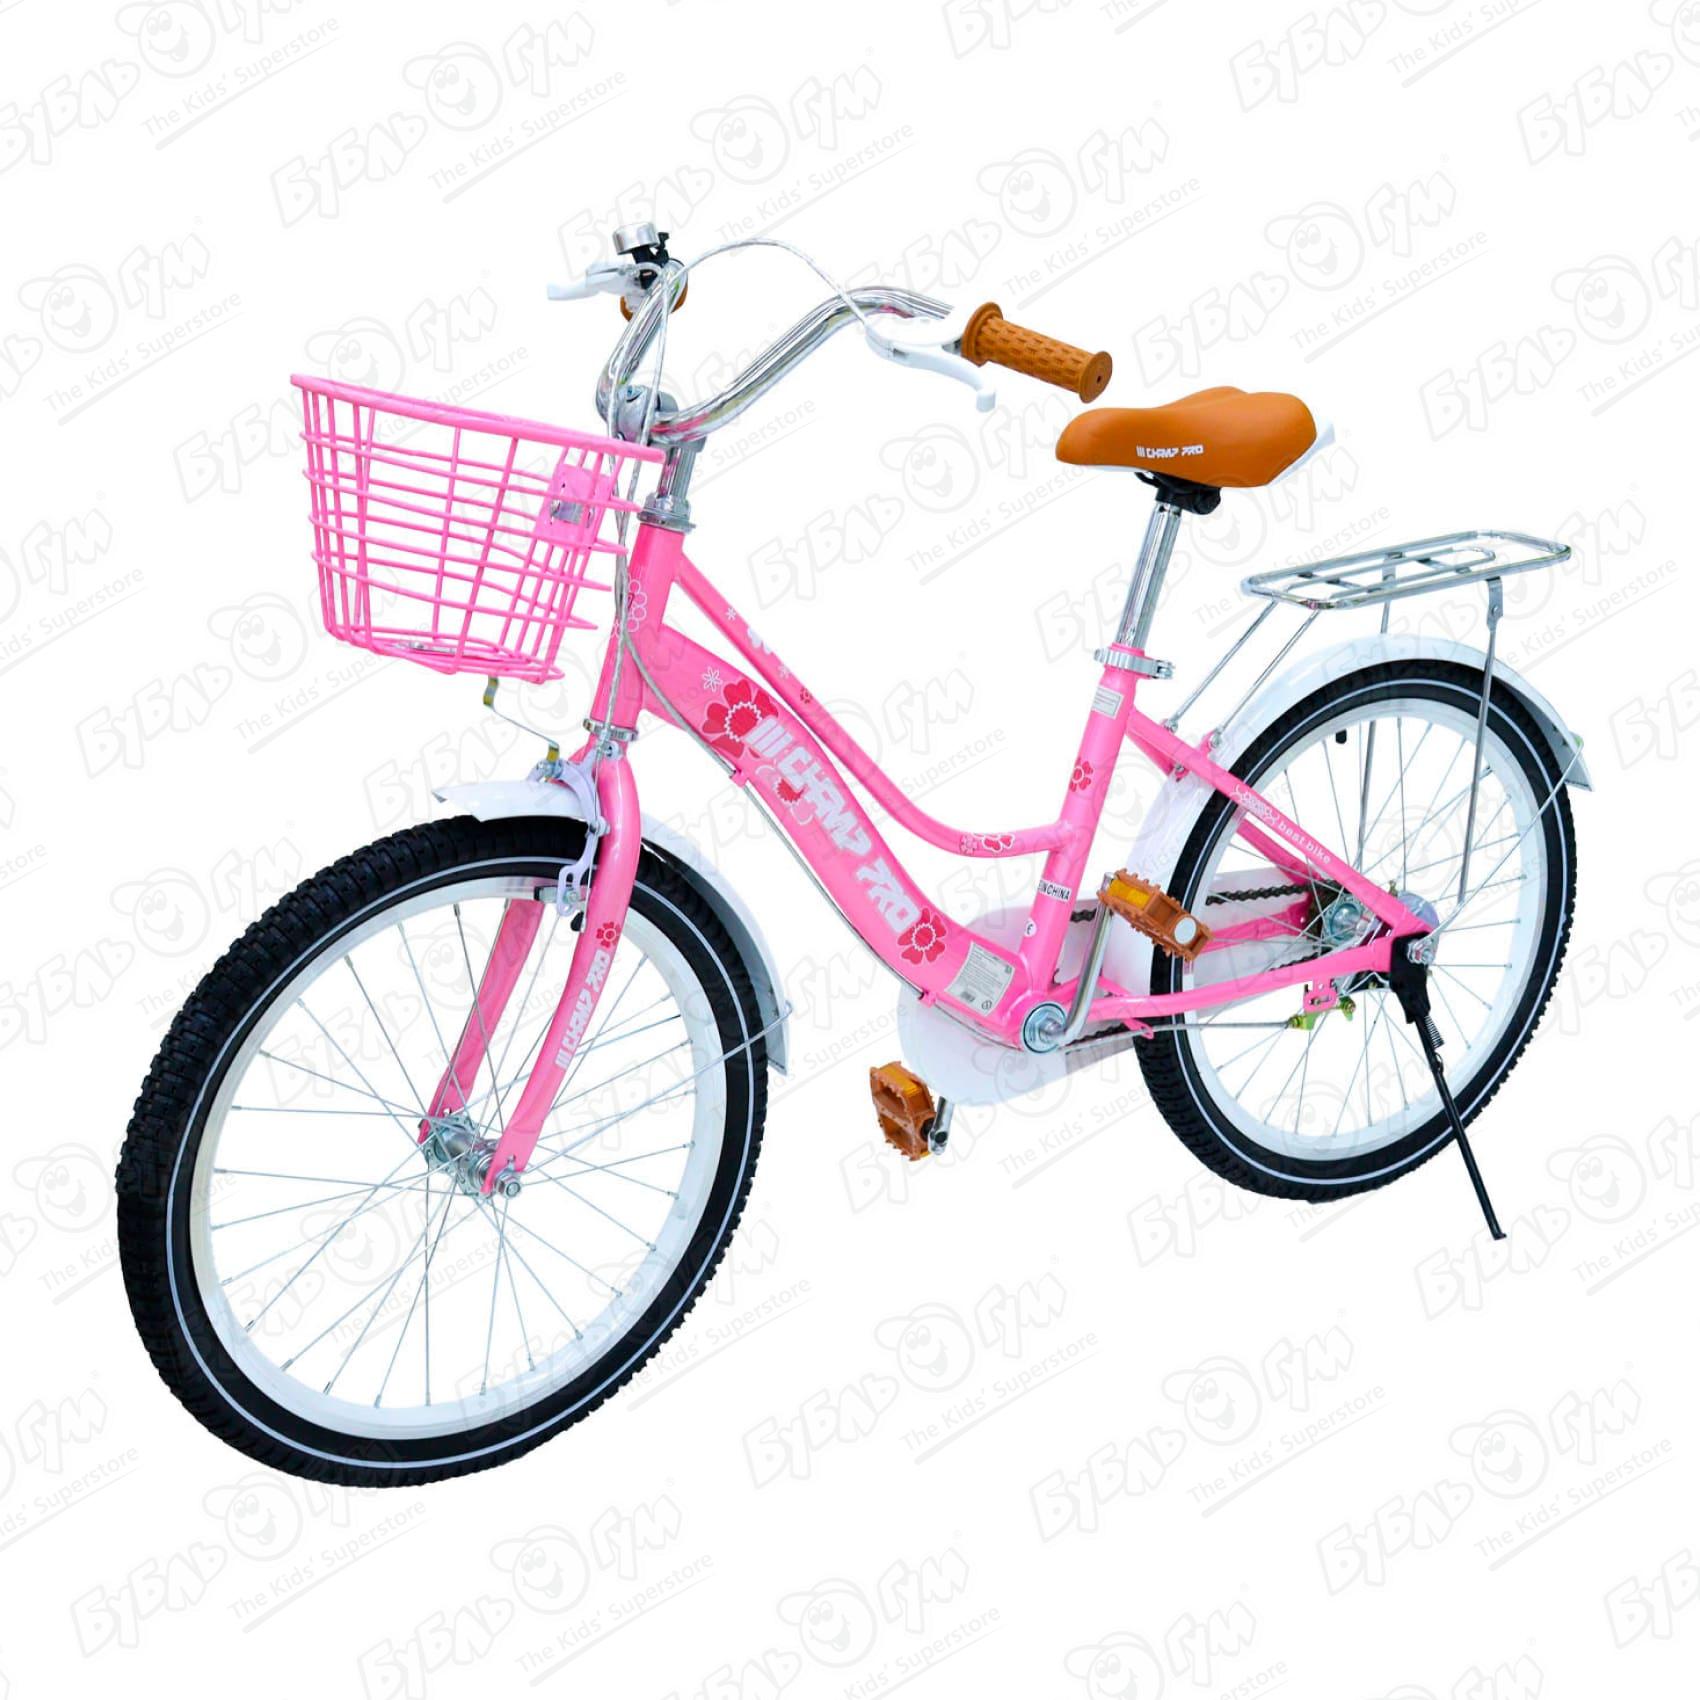 Велосипед Champ Pro комфорт G20 с корзиной розовый велосипед champ pro g16 с корзиной и светоотражателем розовый